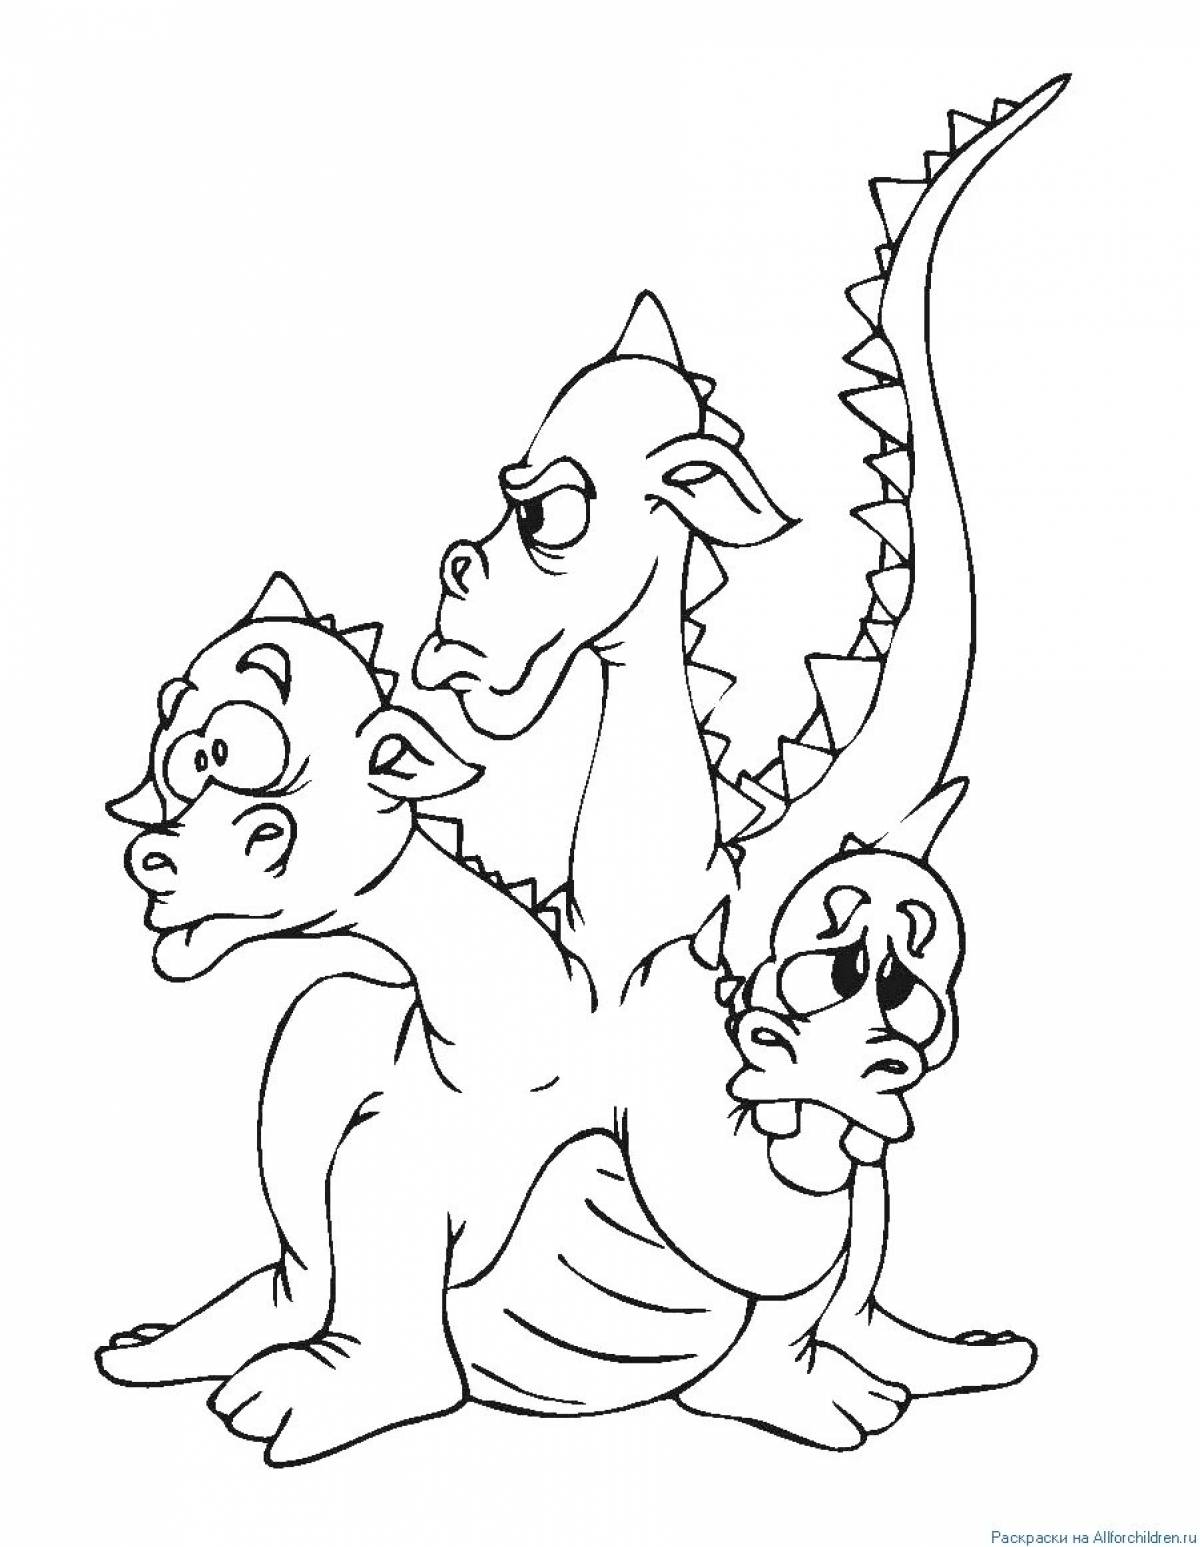 Three-headed dragon #4